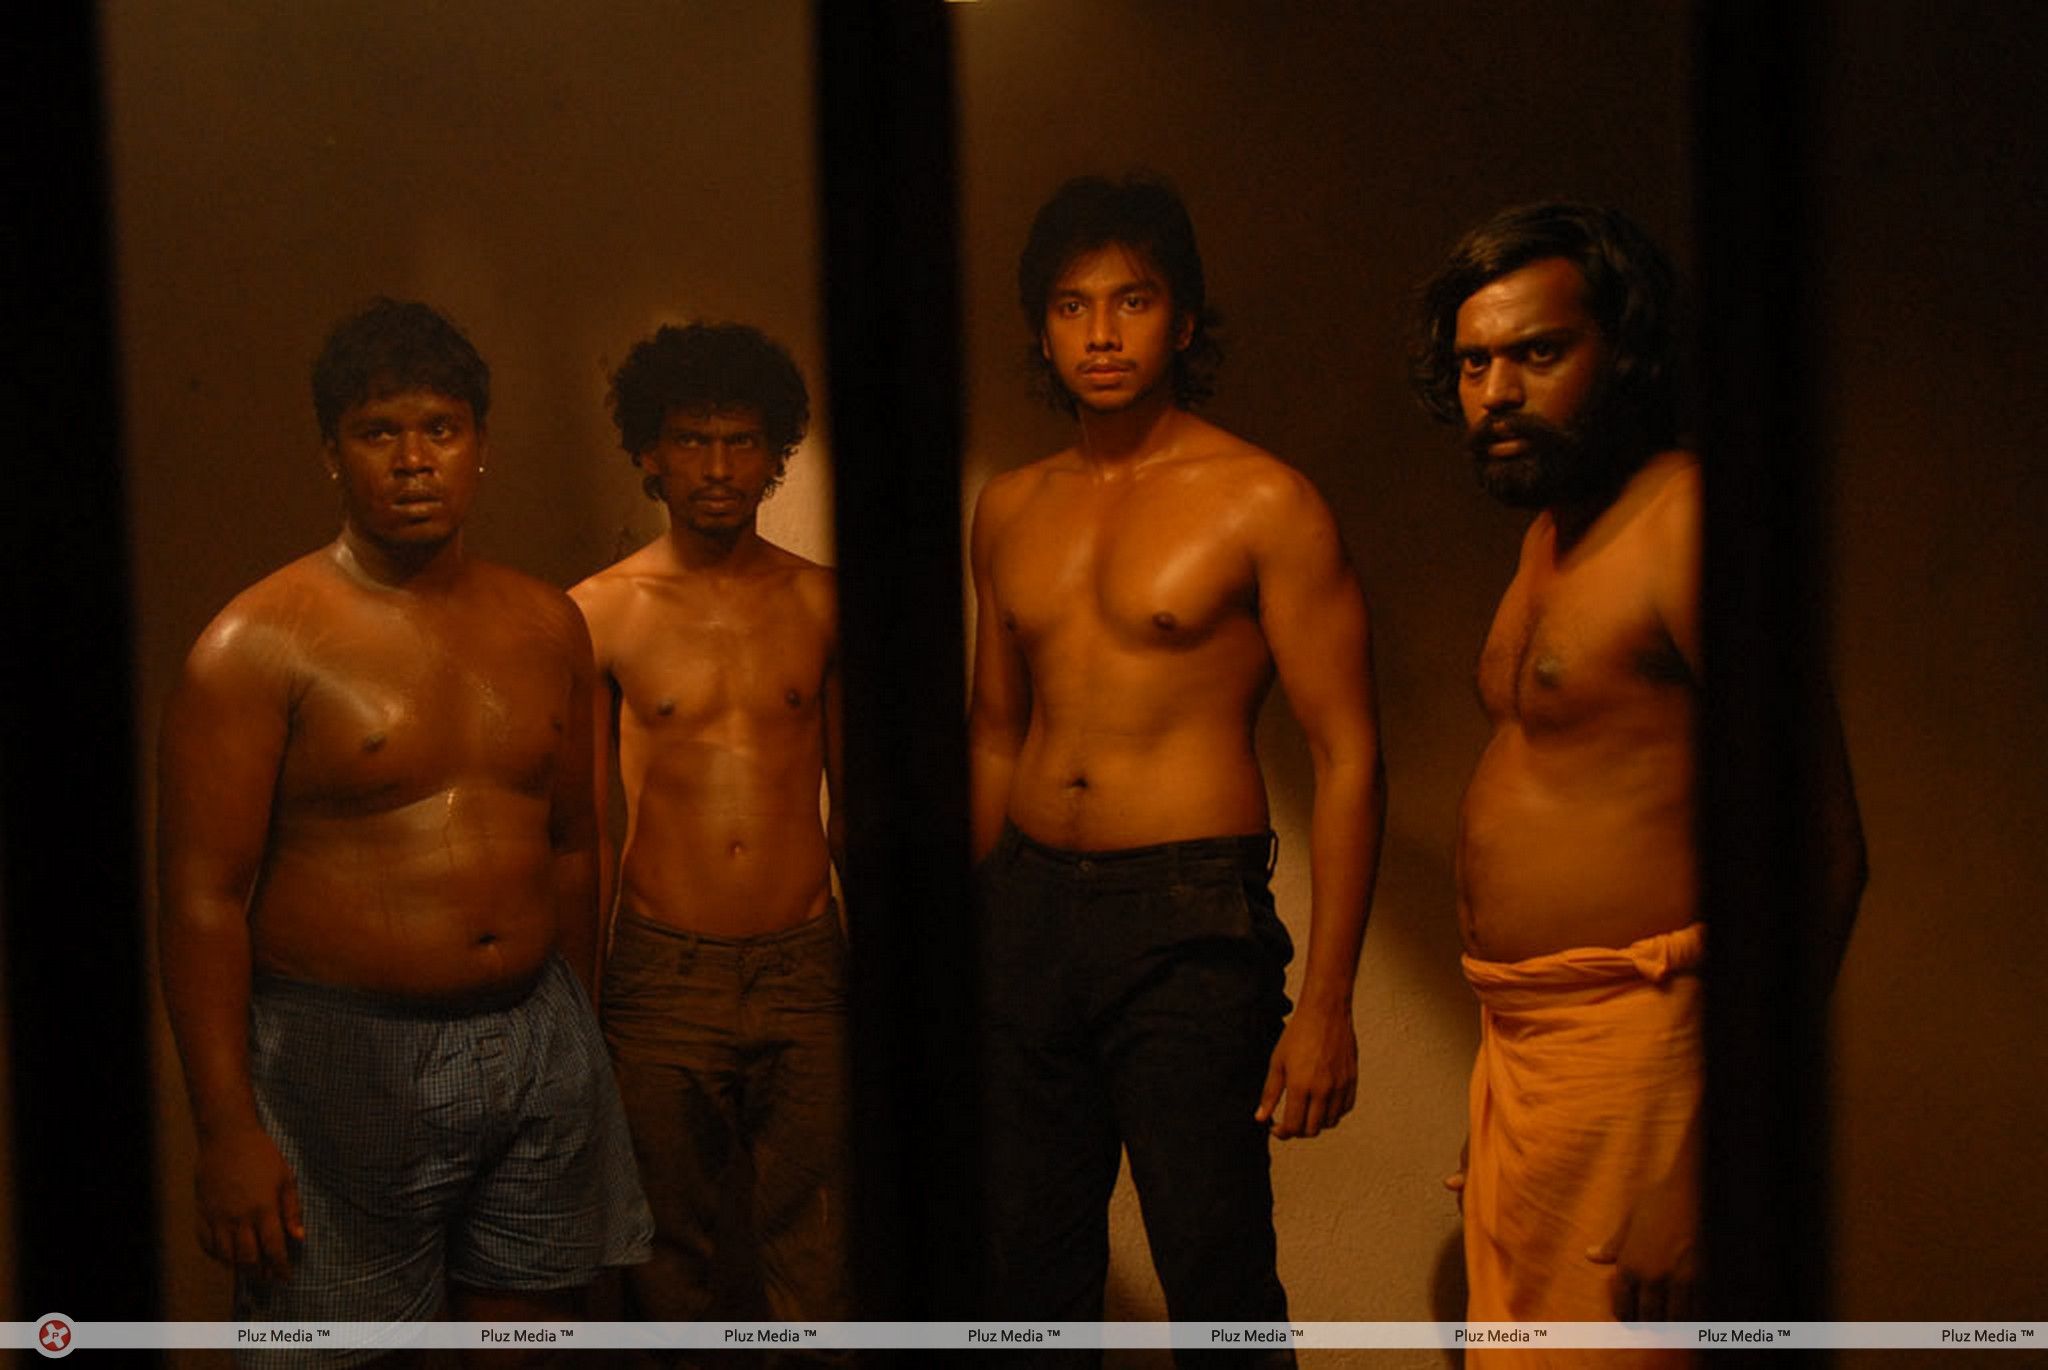 Sundattam Movie Stills | Picture 290729